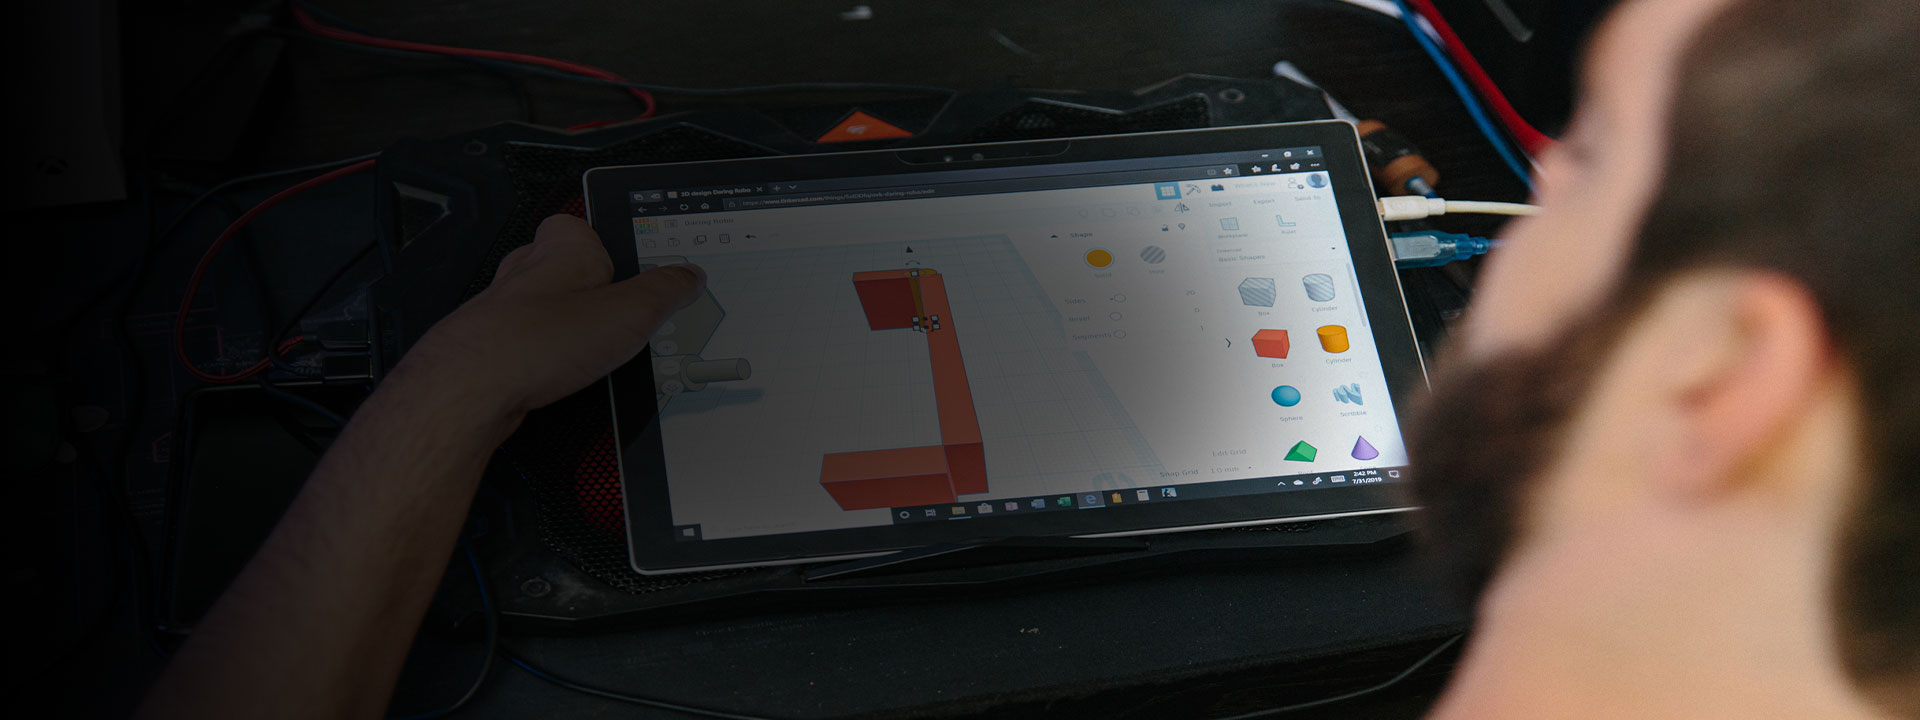 Spencer modifica i suoi progetti sul suo dispositivo Surface.